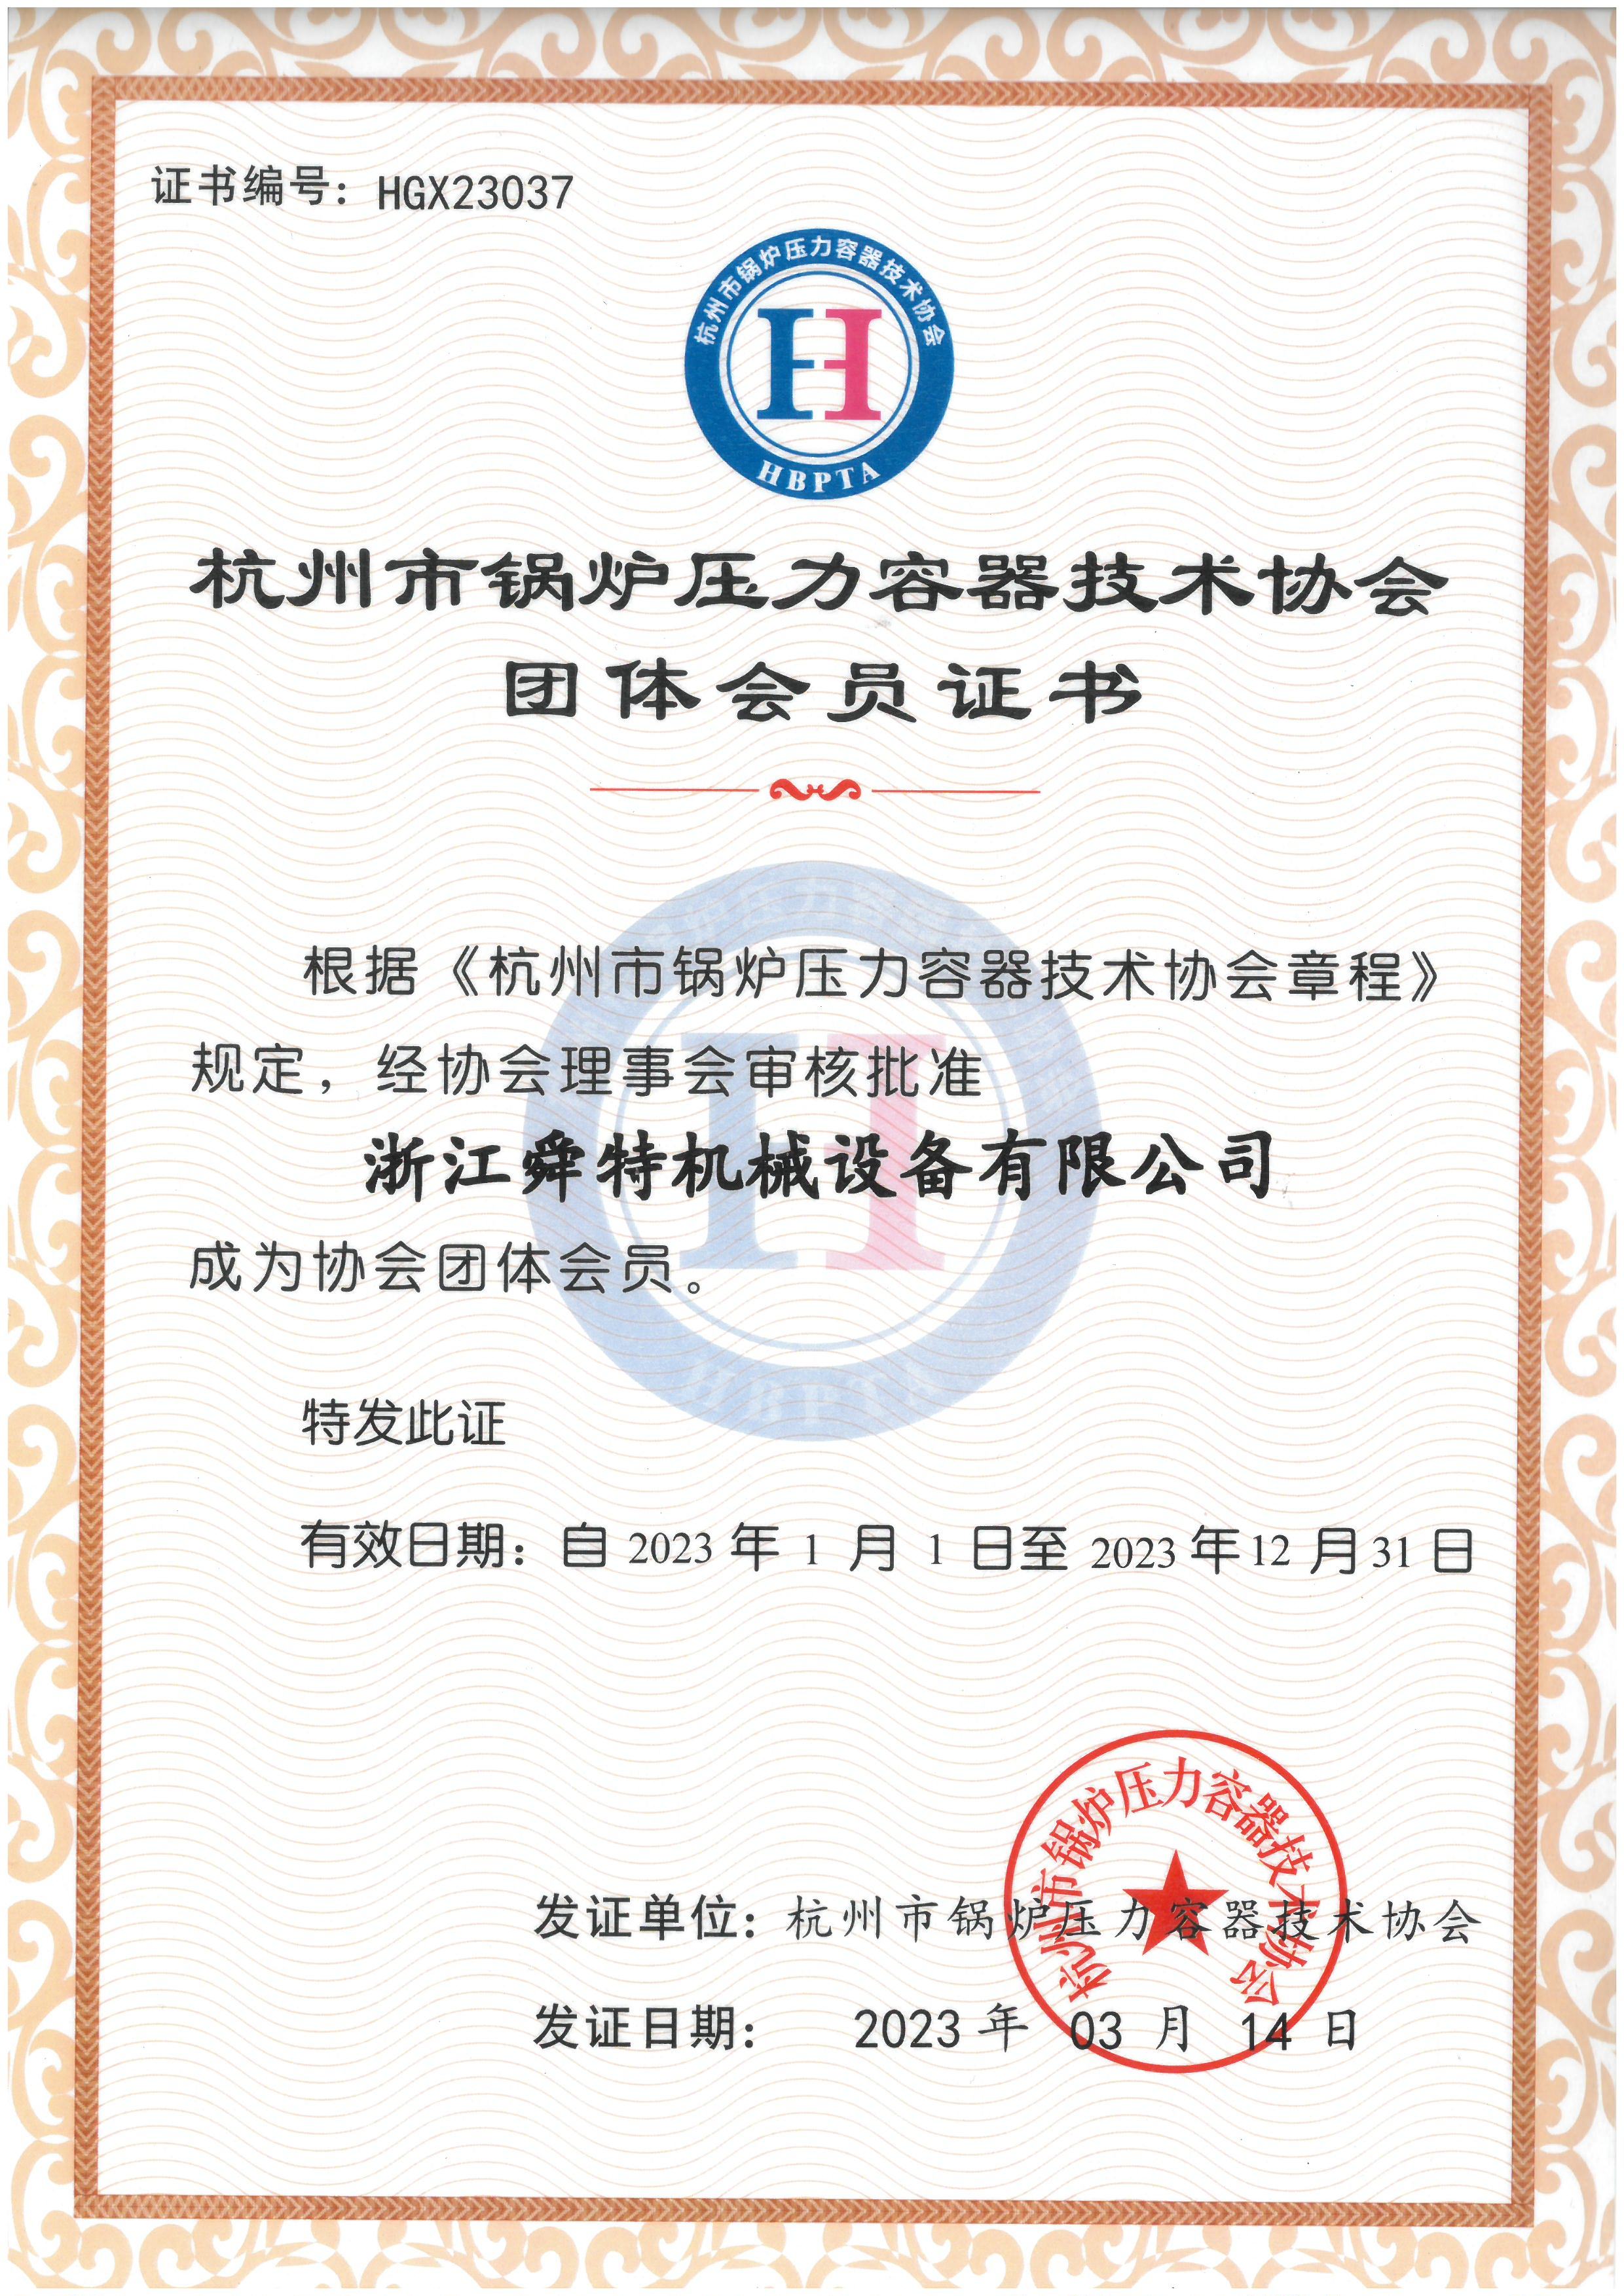 杭州市锅炉压力容器技术协会团体会员证书